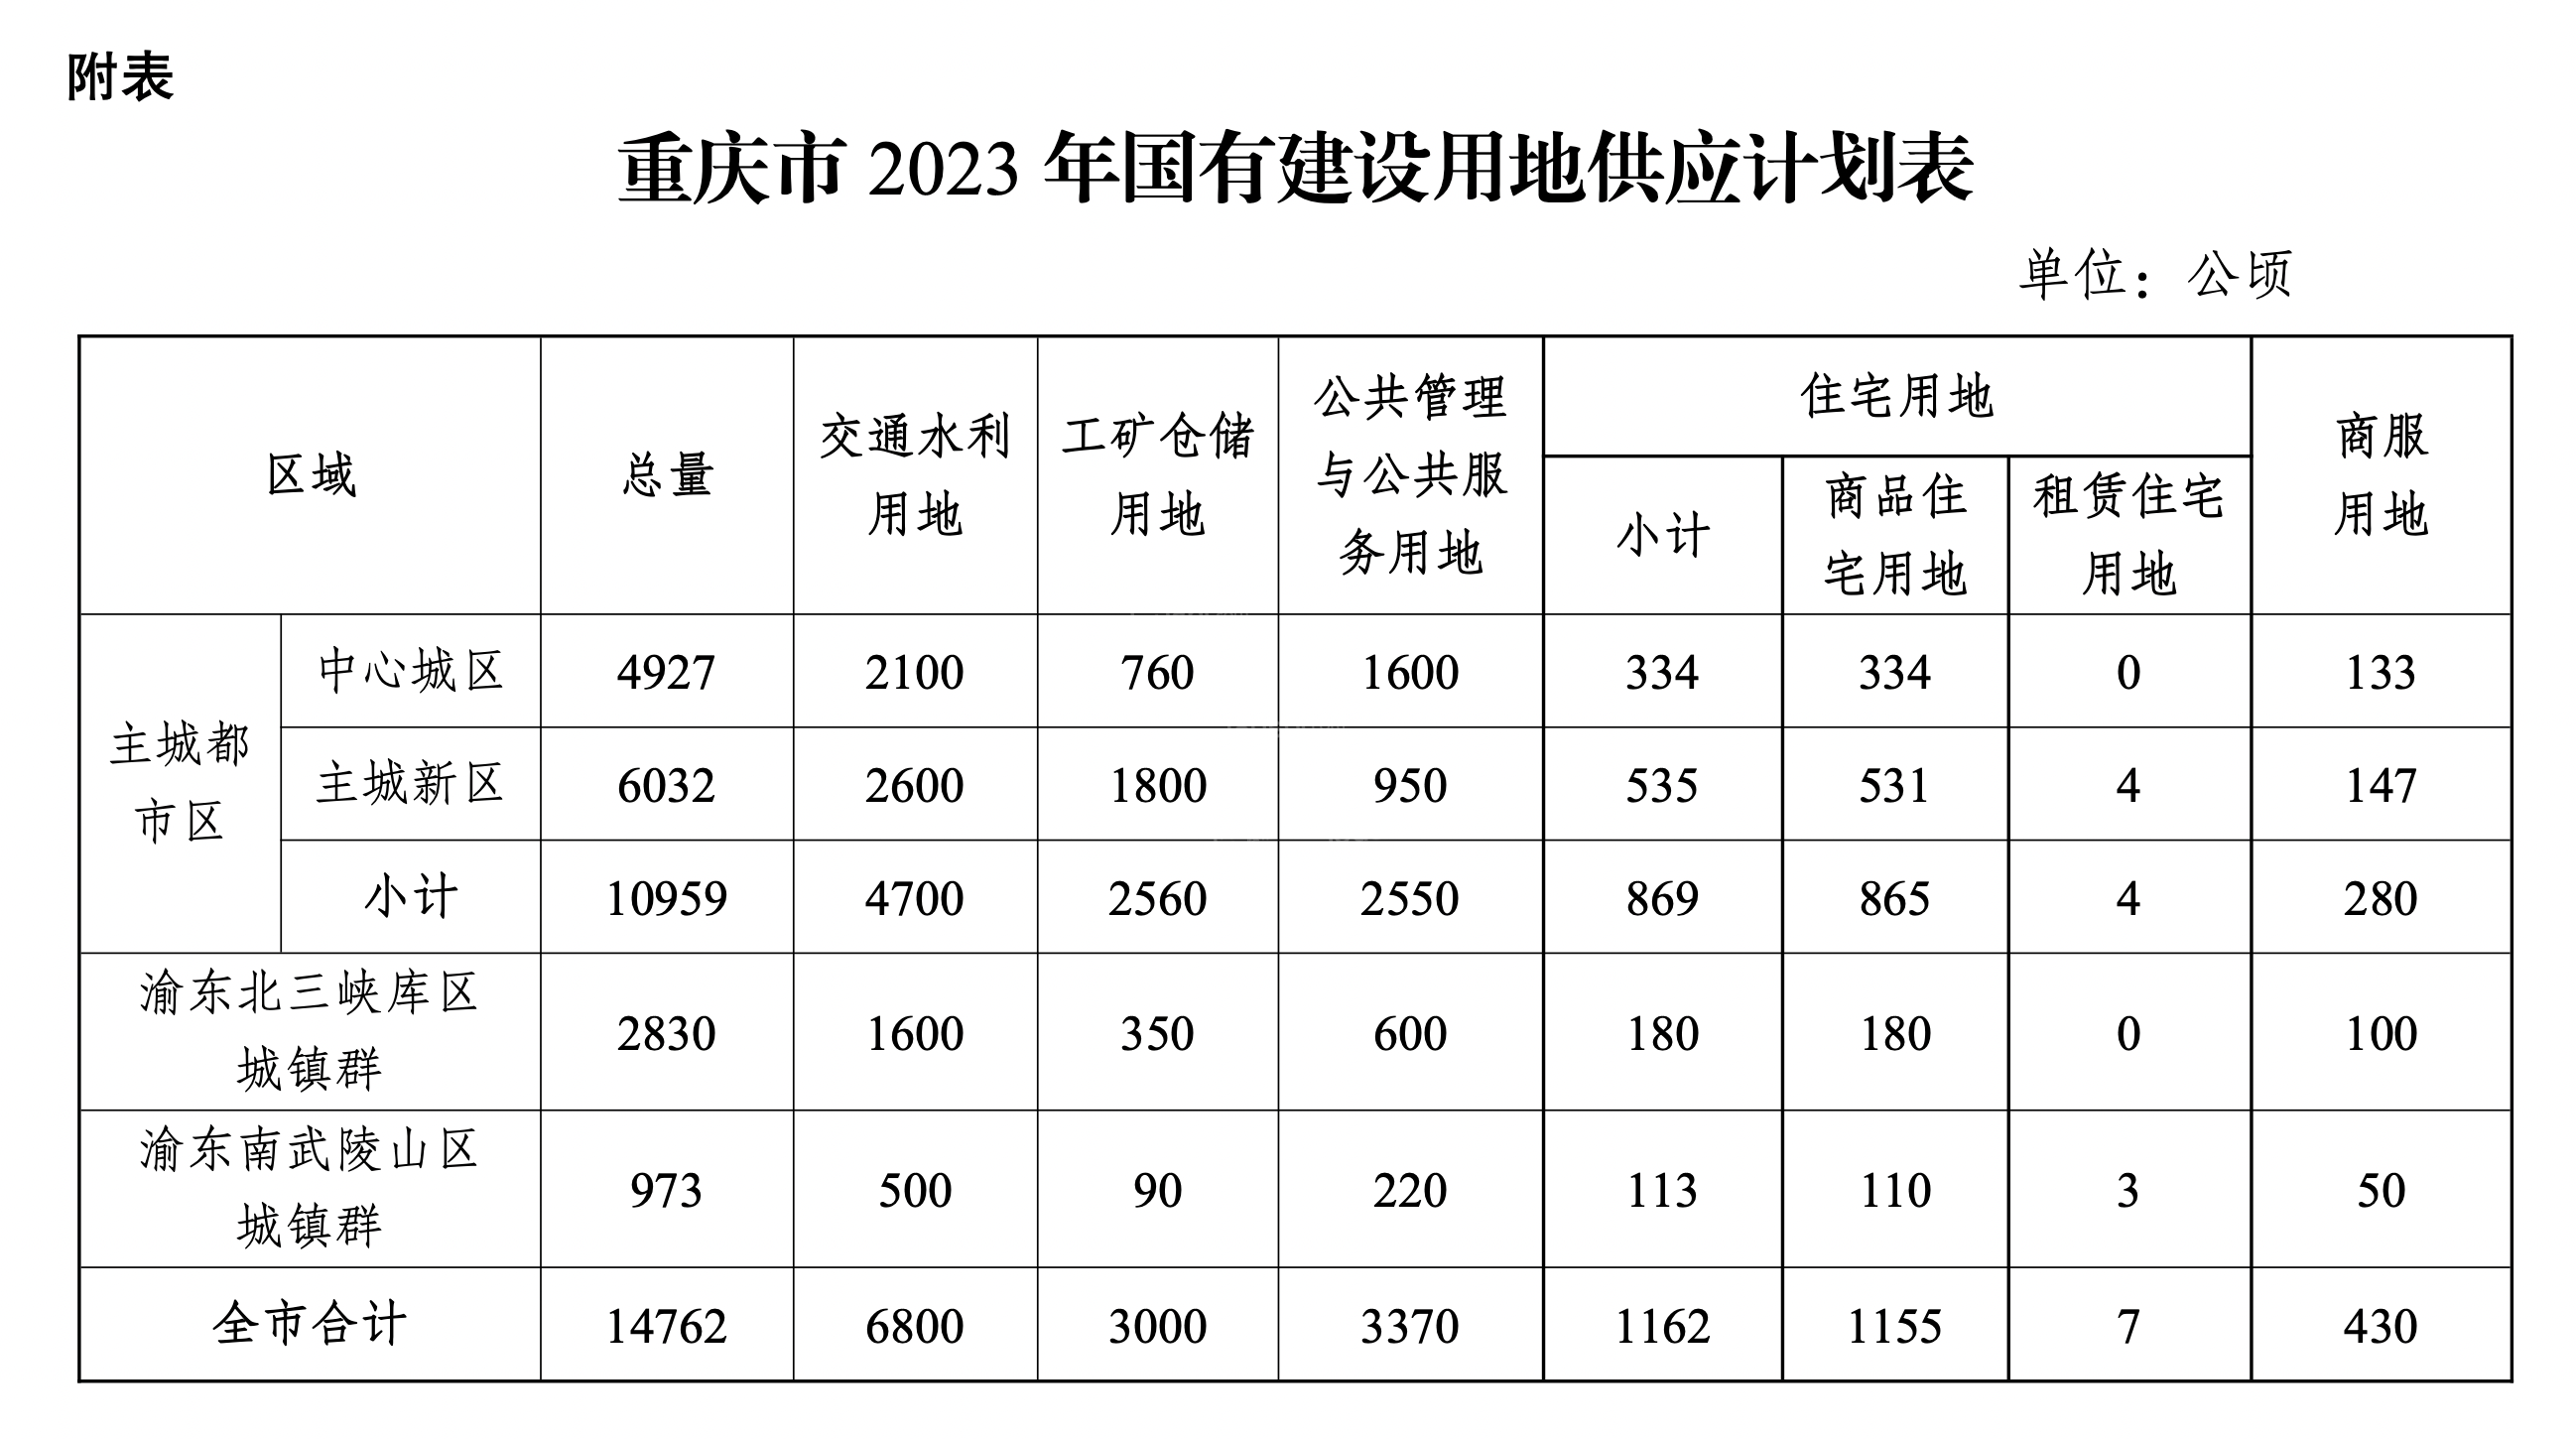 2023年重庆计划供应建设用地14762公顷，住宅供地同比减半